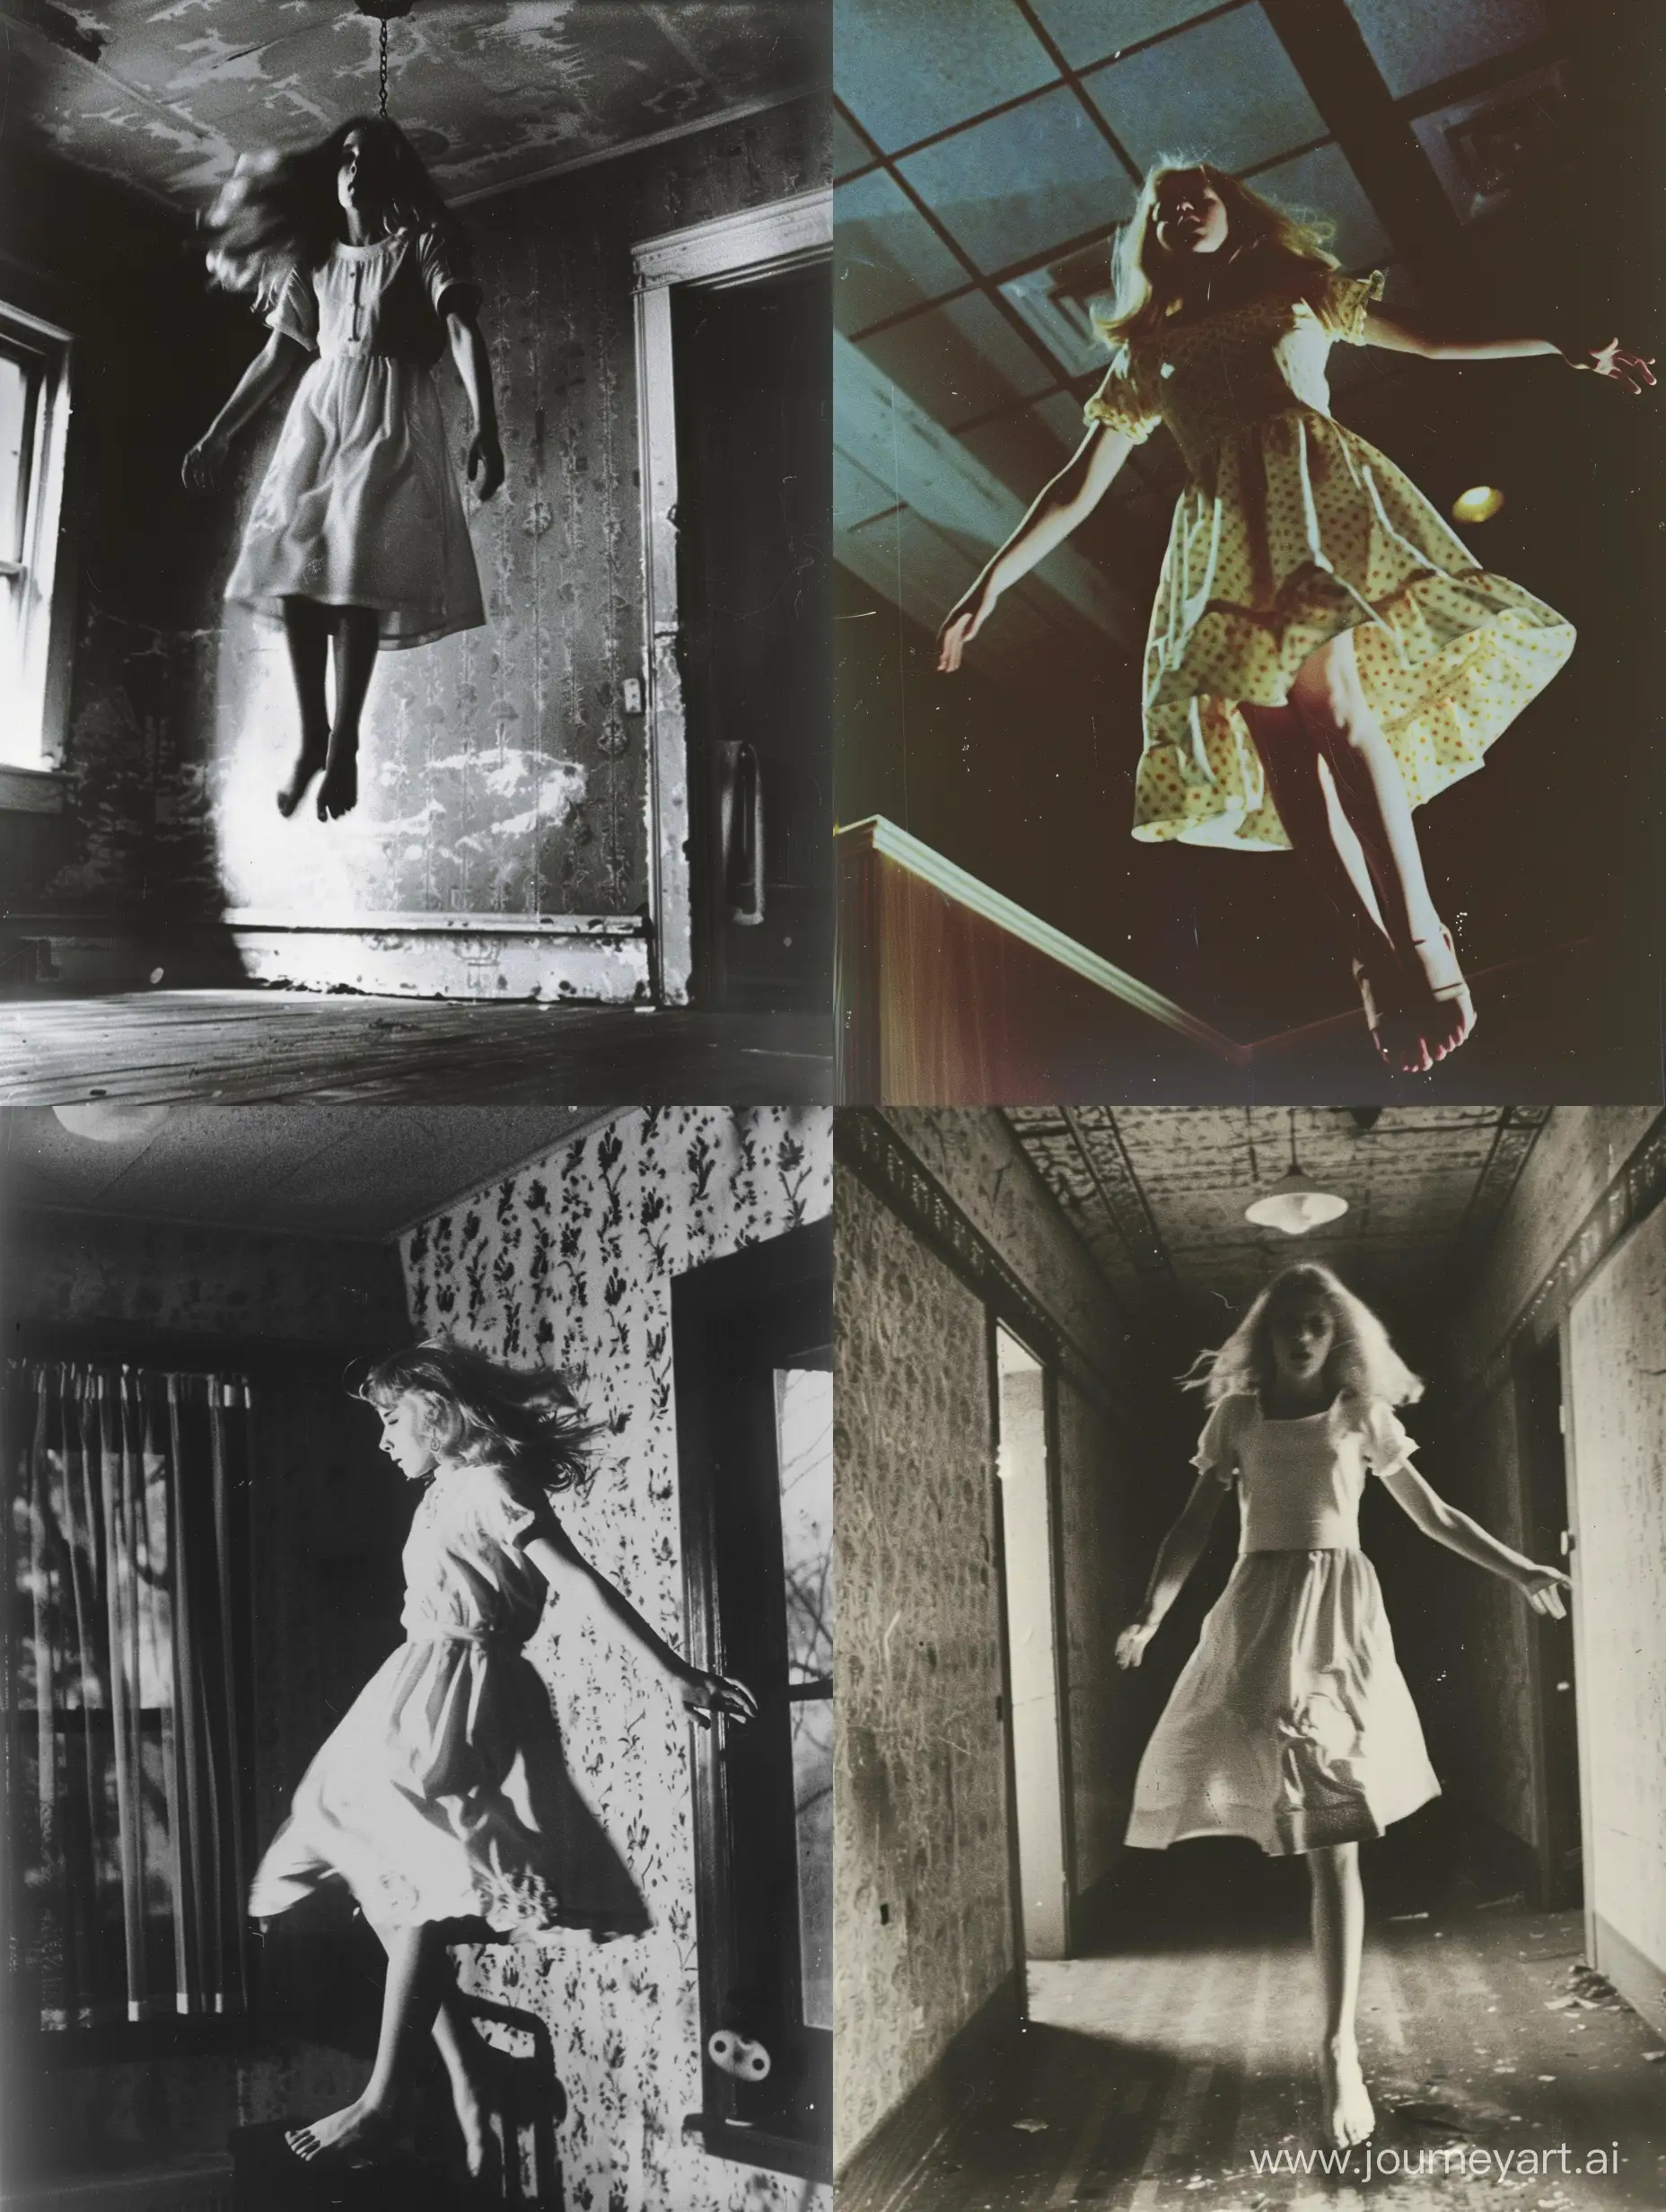 Levitating-Beauty-in-CarrieCore-Horror-Scene-1980s-Inspired-Dark-LSD-Trip